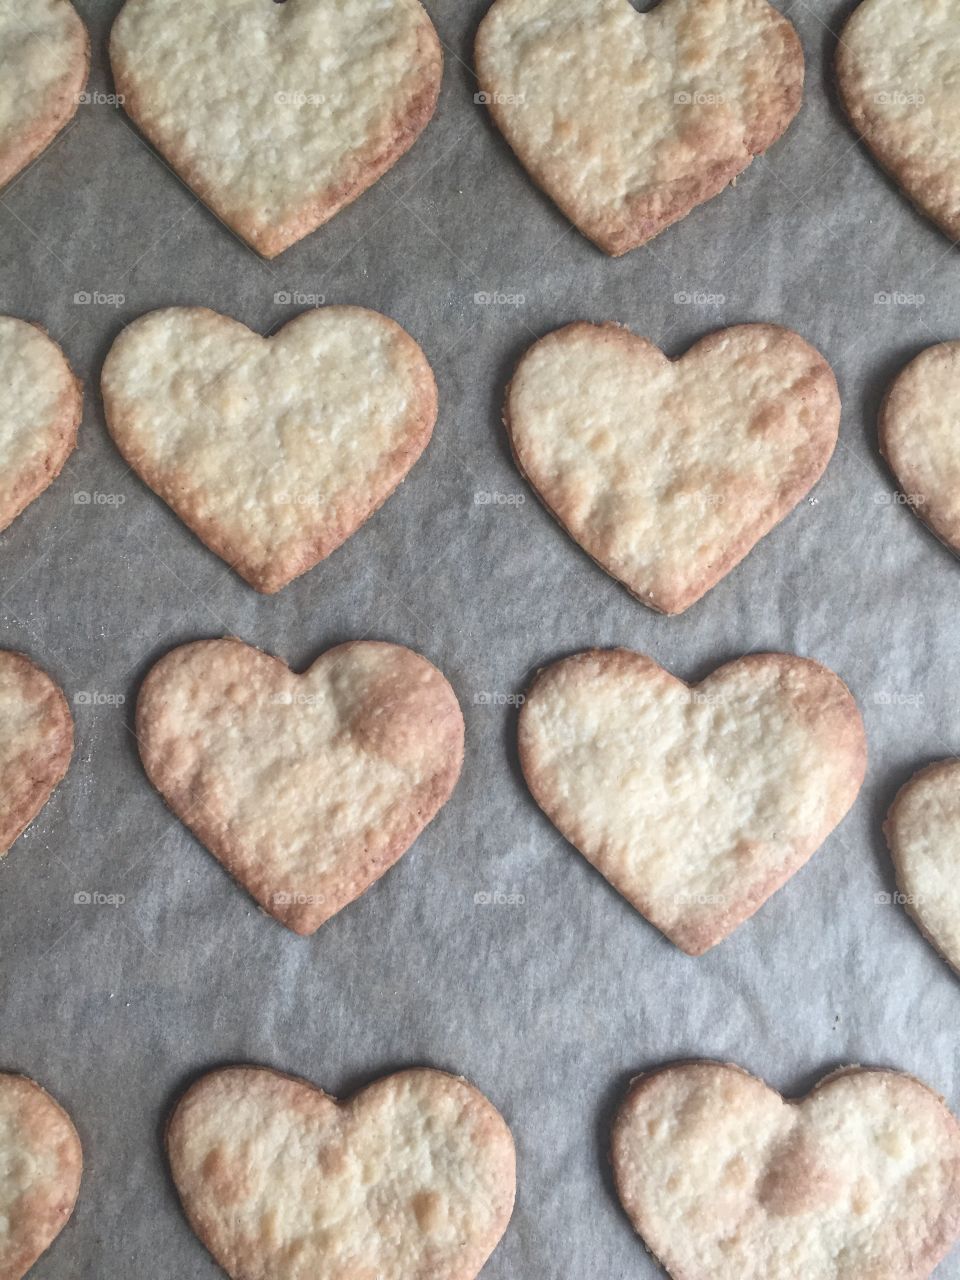 Arrangement of Heart shape cookies